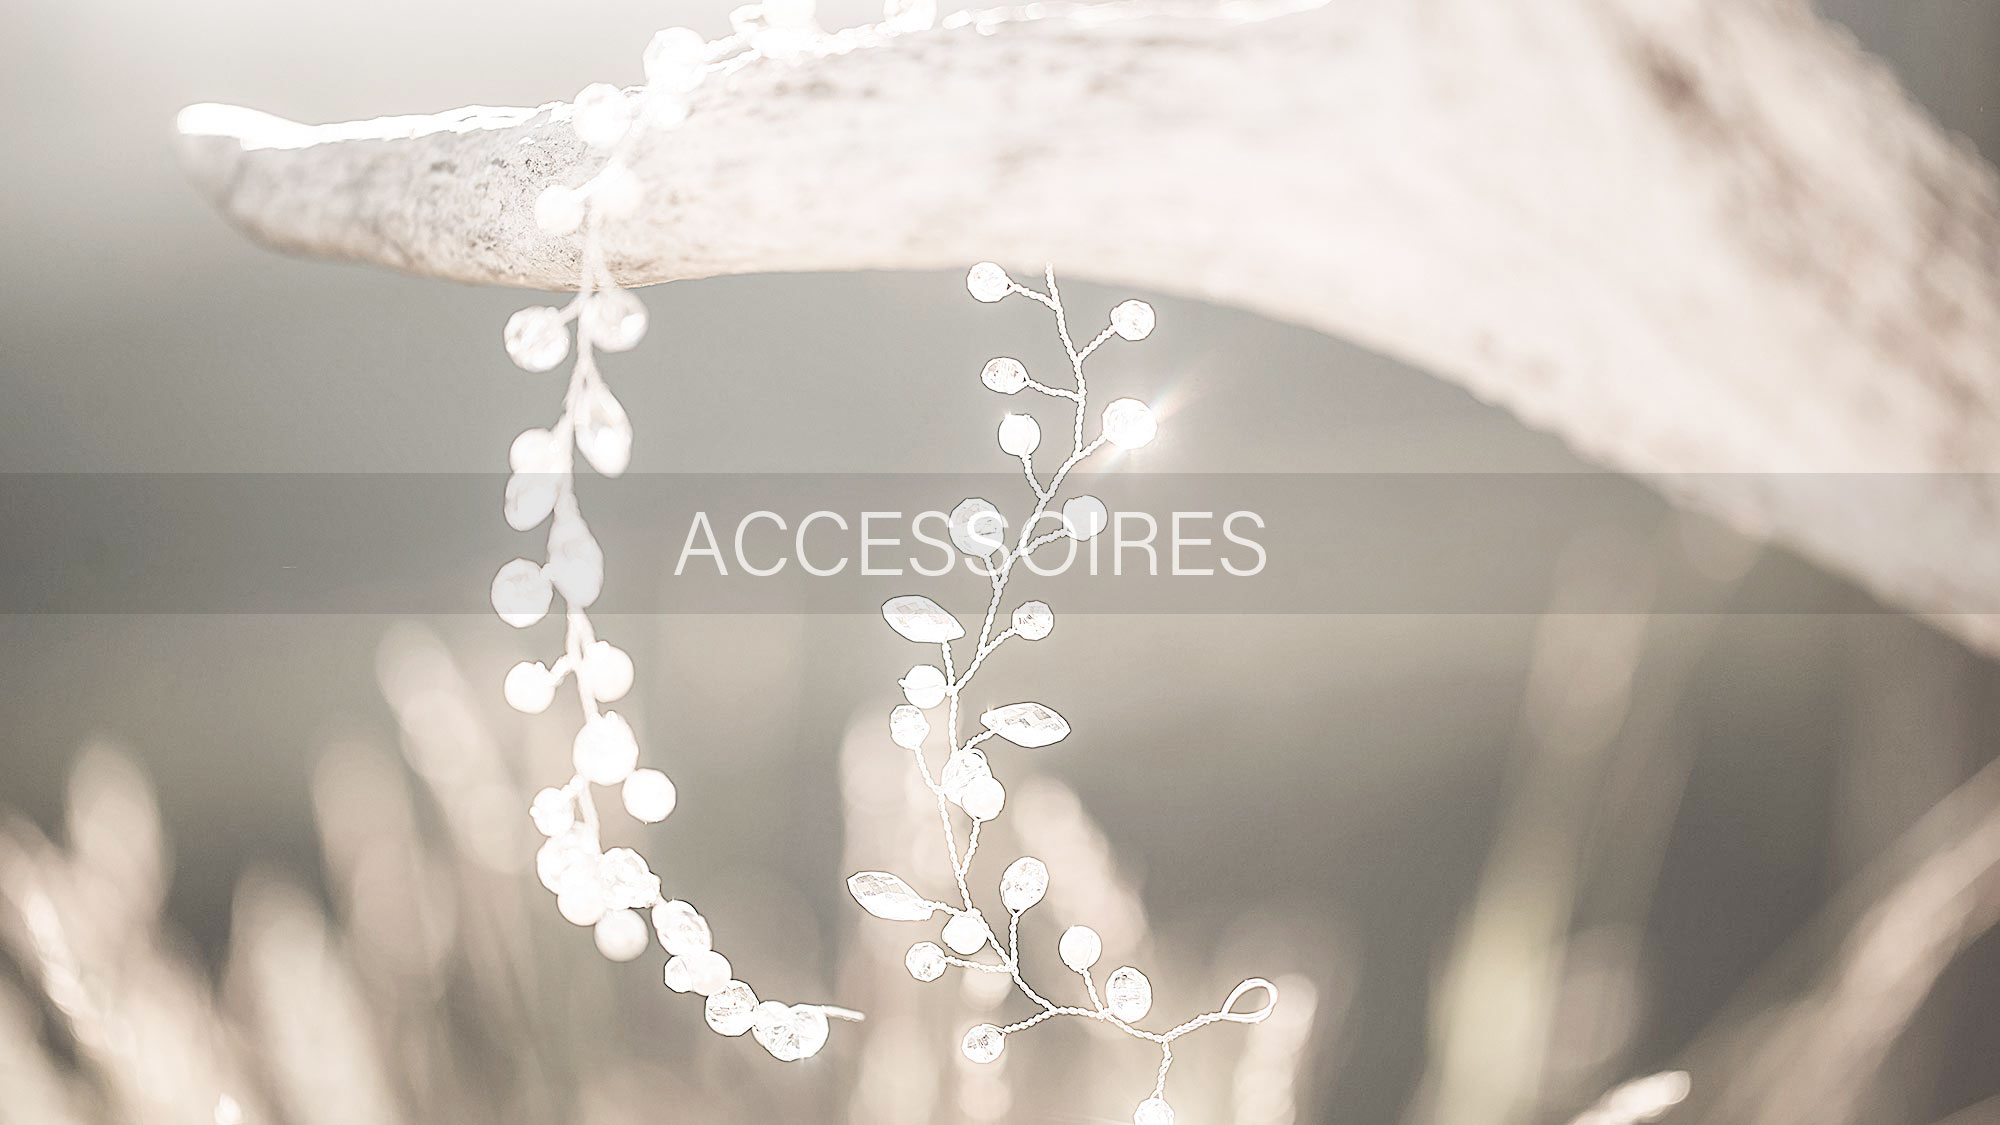 Brautmoden Accessoires für die suchende Braut in Großenkneten und Umgebung. Brautschuhe für Ihren Hochzeitstag passend zum Brautkleid. Entdecken Sie die große Vielfalt unserer Brautmoden Accessoires in unserem Geschäft in Großenkneten.